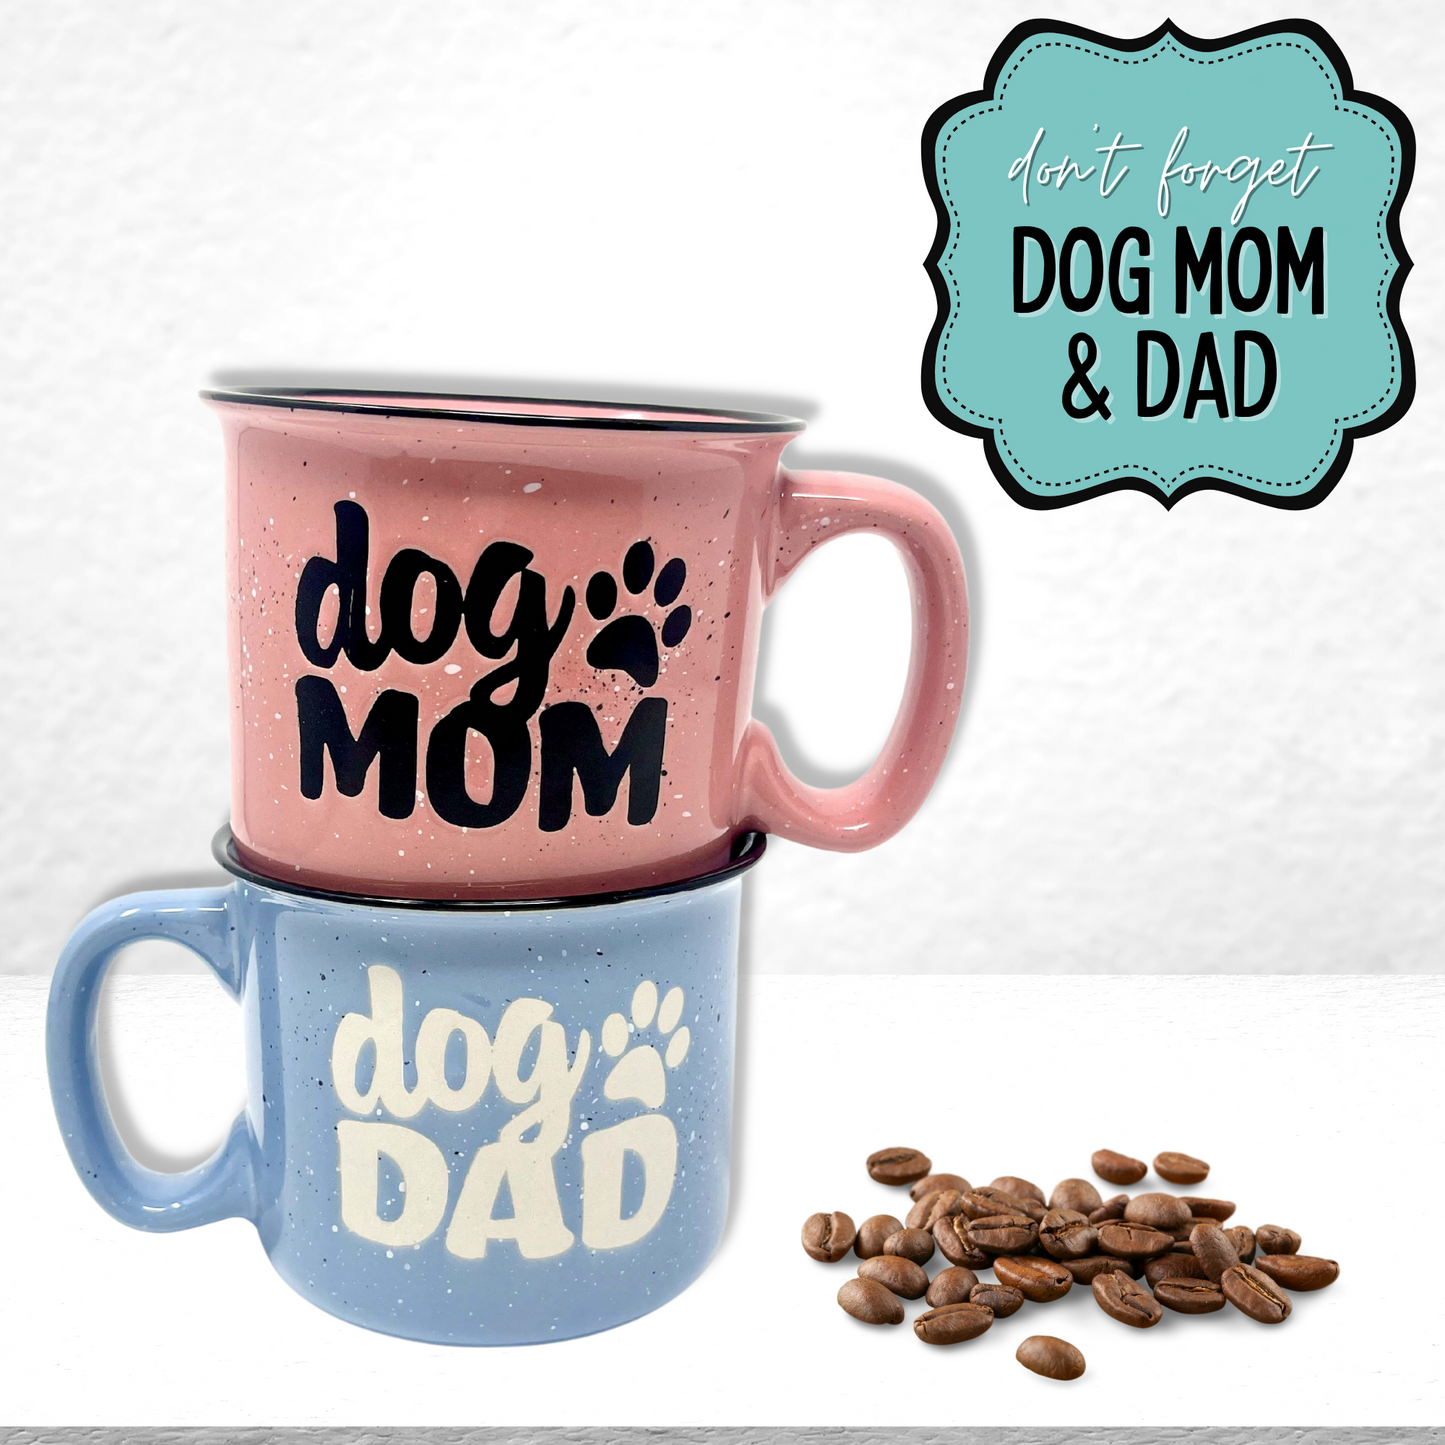 Fur Mama 15 oz Plum Ceramic Mug for Pet Lovers - Outlet Deals Texas